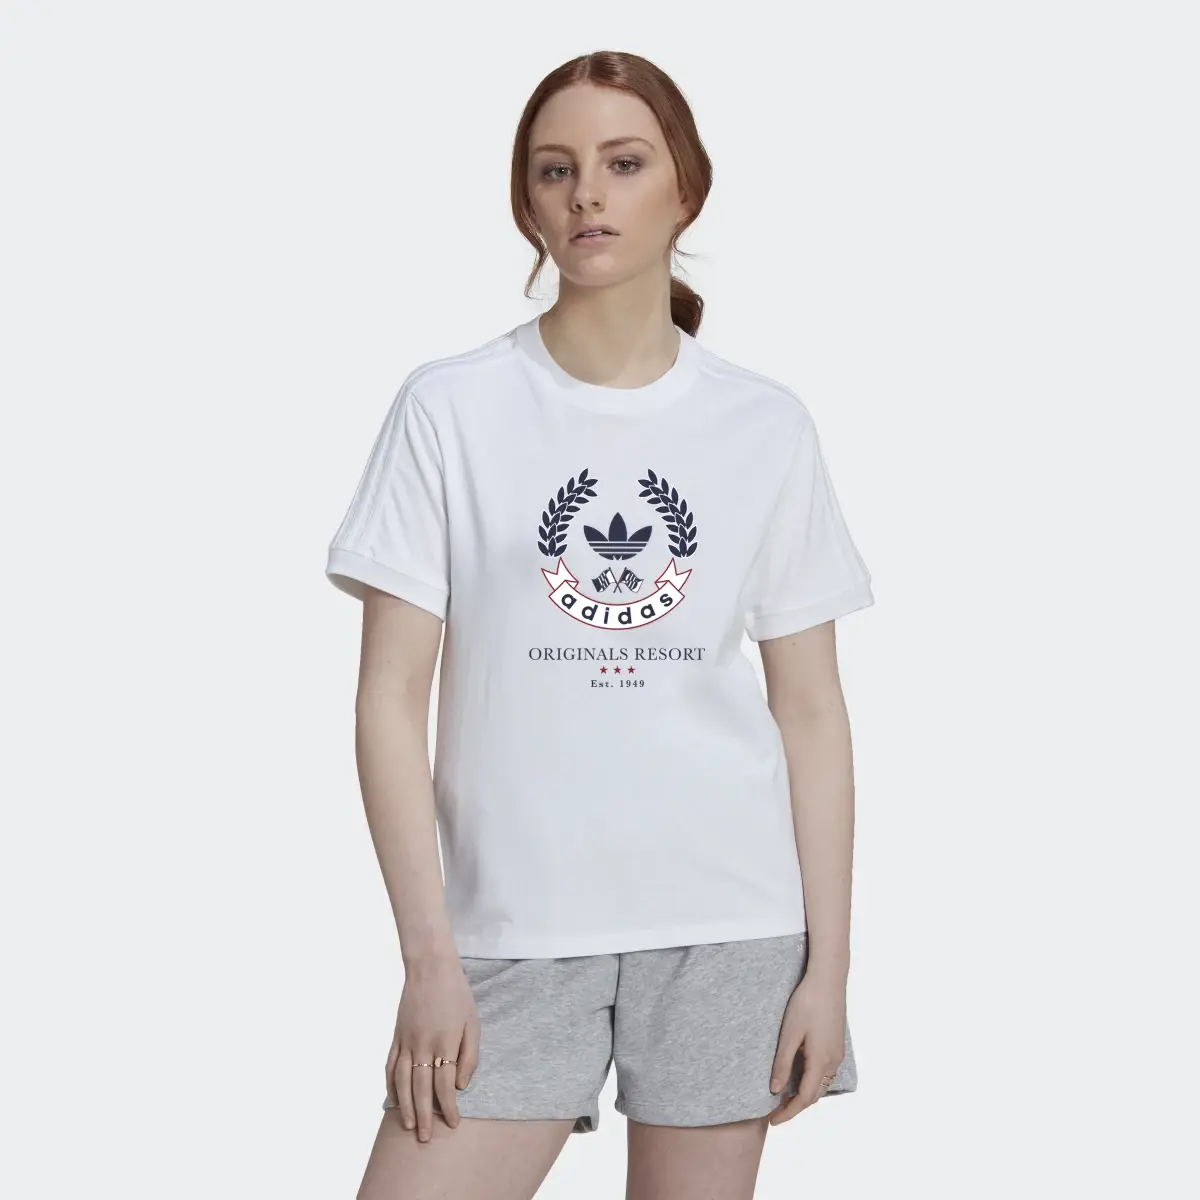 Adidas T-shirt com Emblema. 2